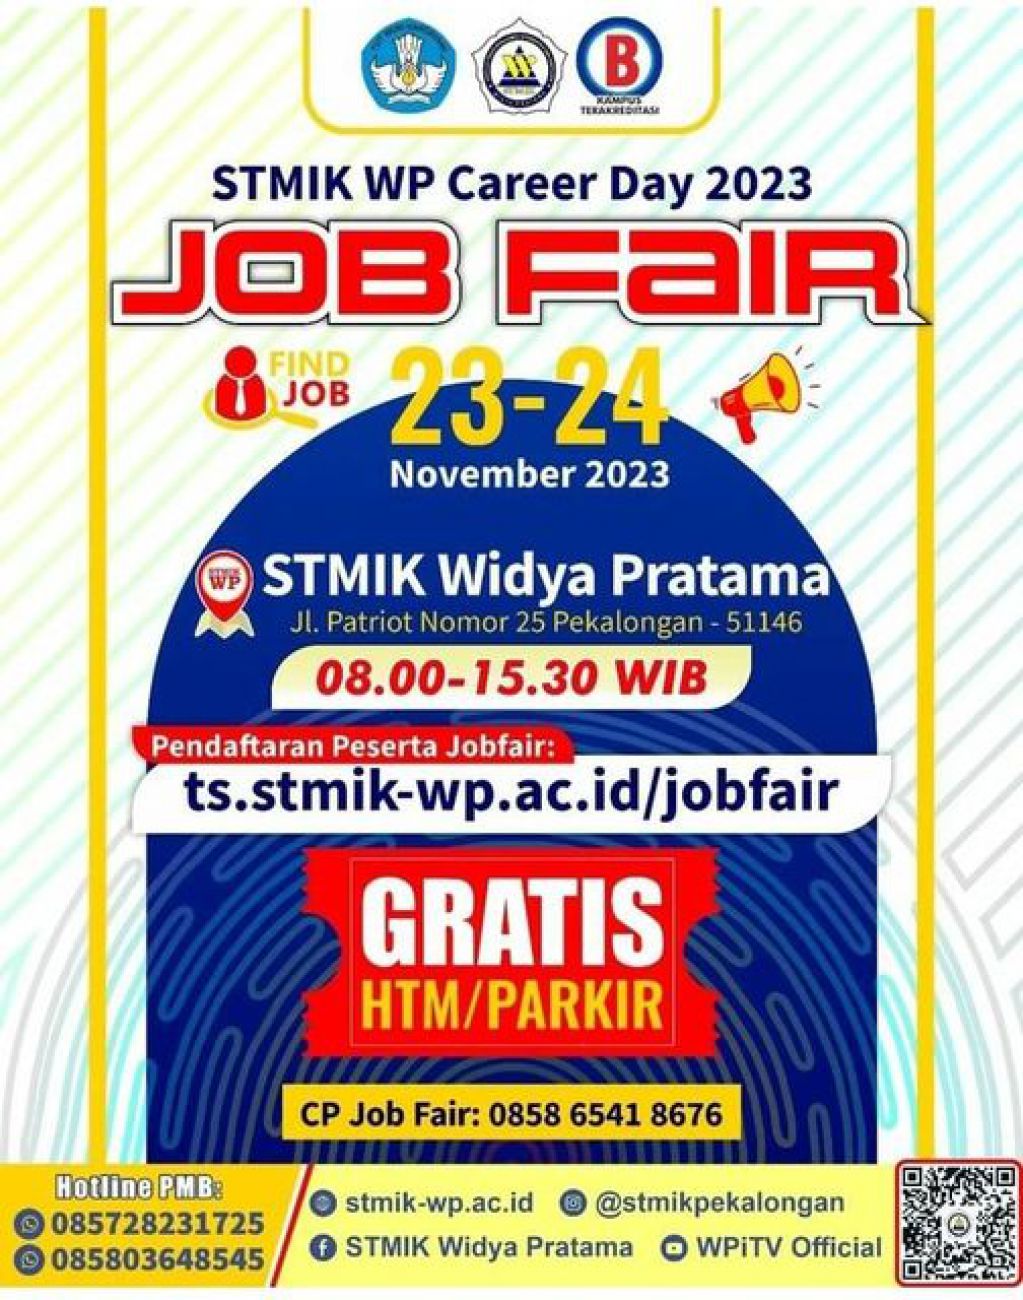 stmik-wp-career-day-2023-job-fair